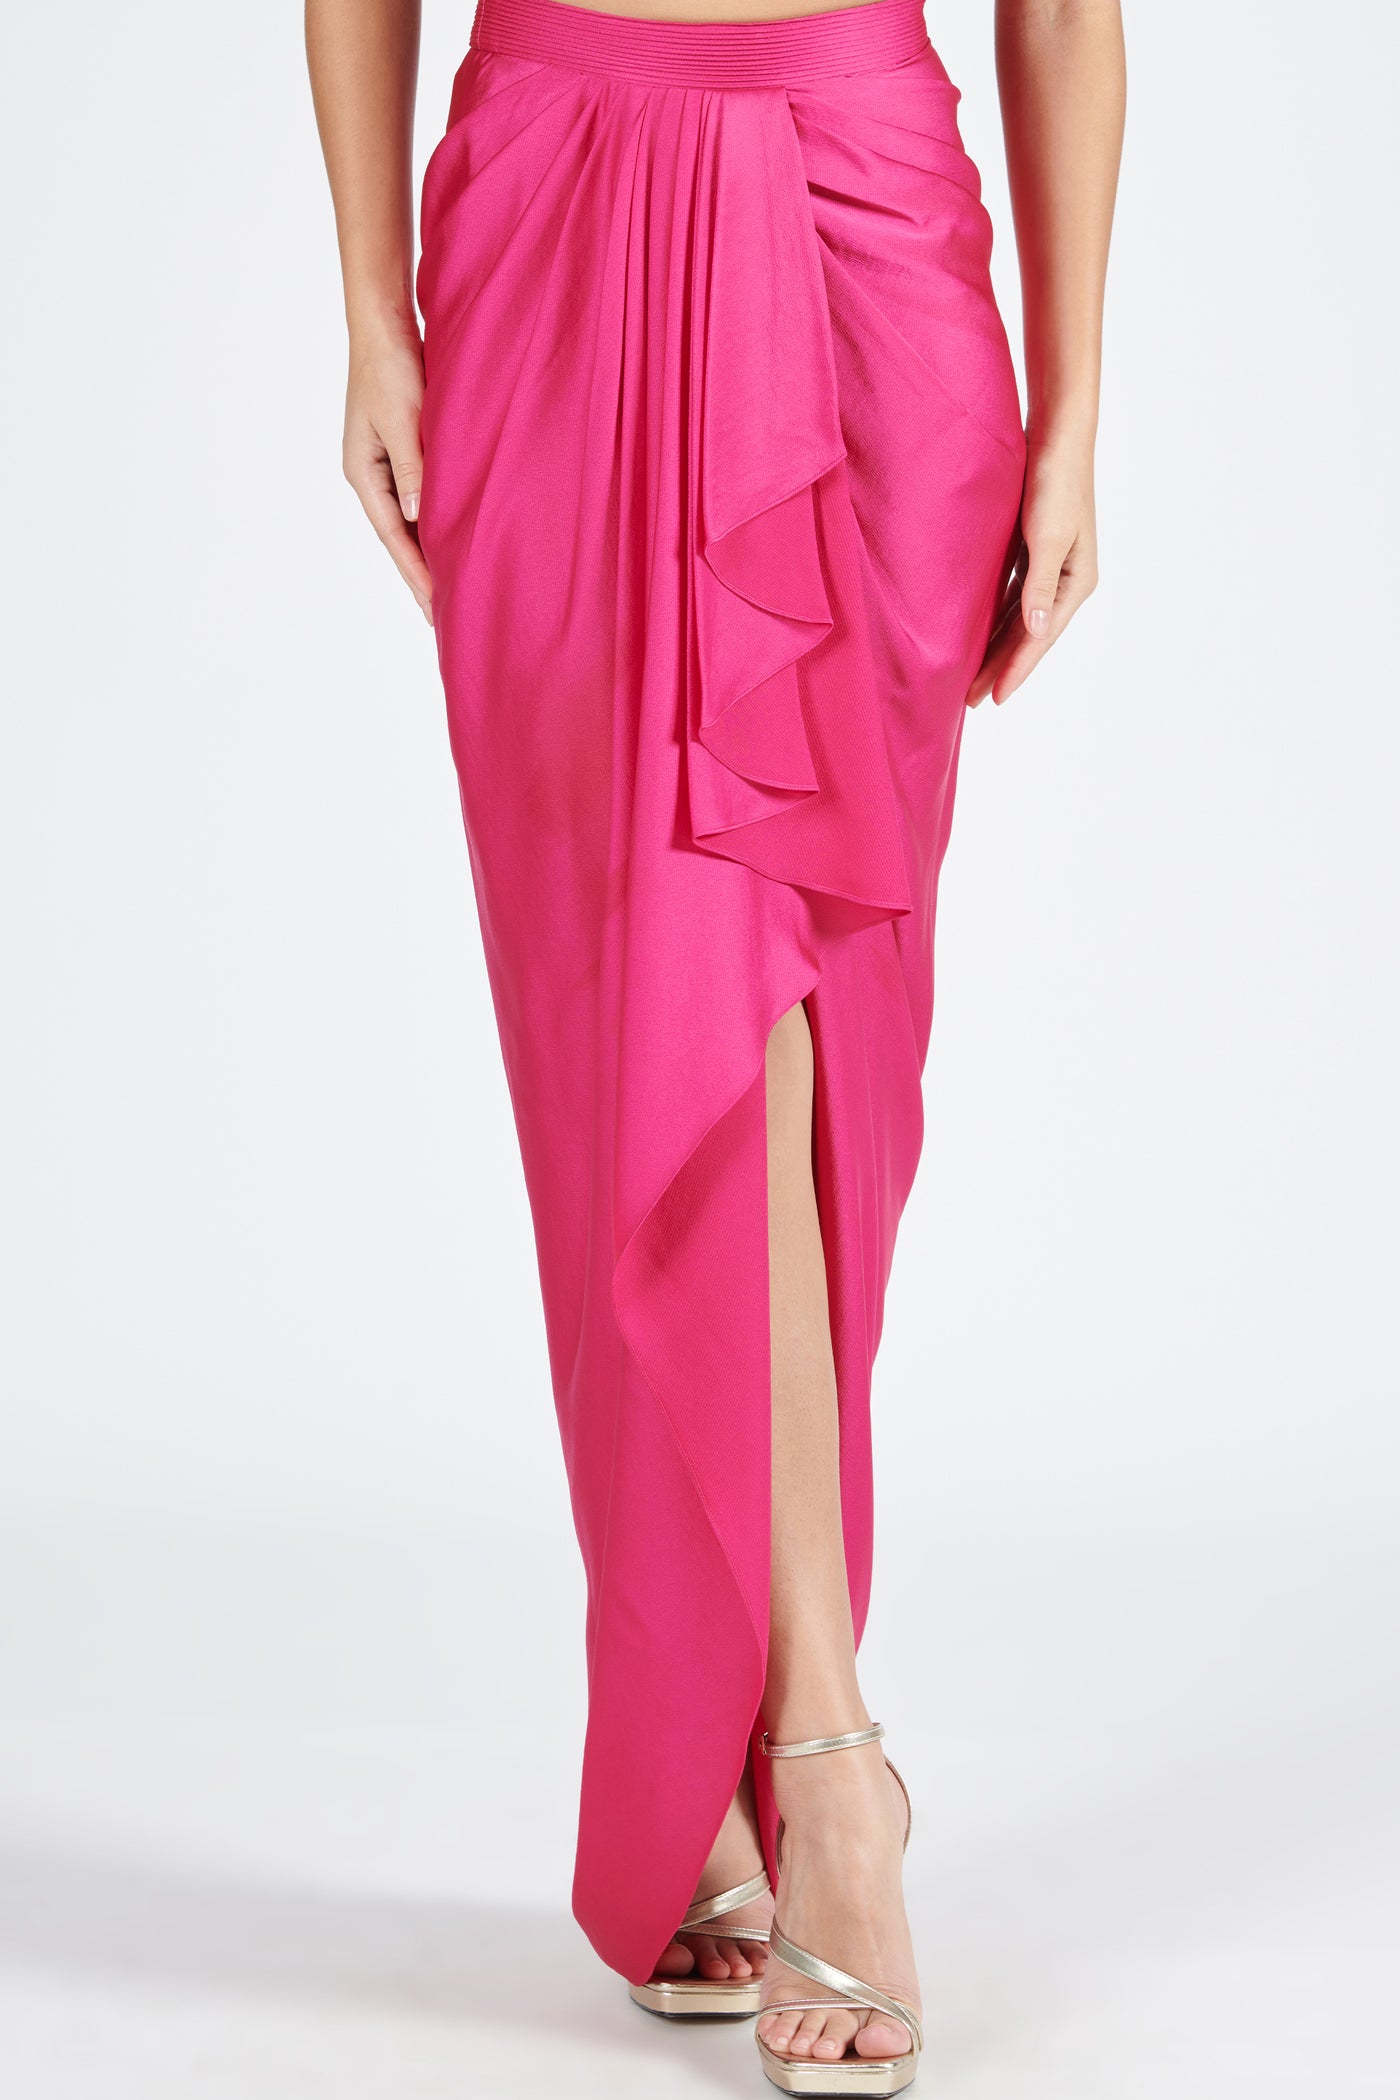 Shantanu & Nikhil Pink Asymmetric Draped Skirt indian designer wear online shopping melange singapore